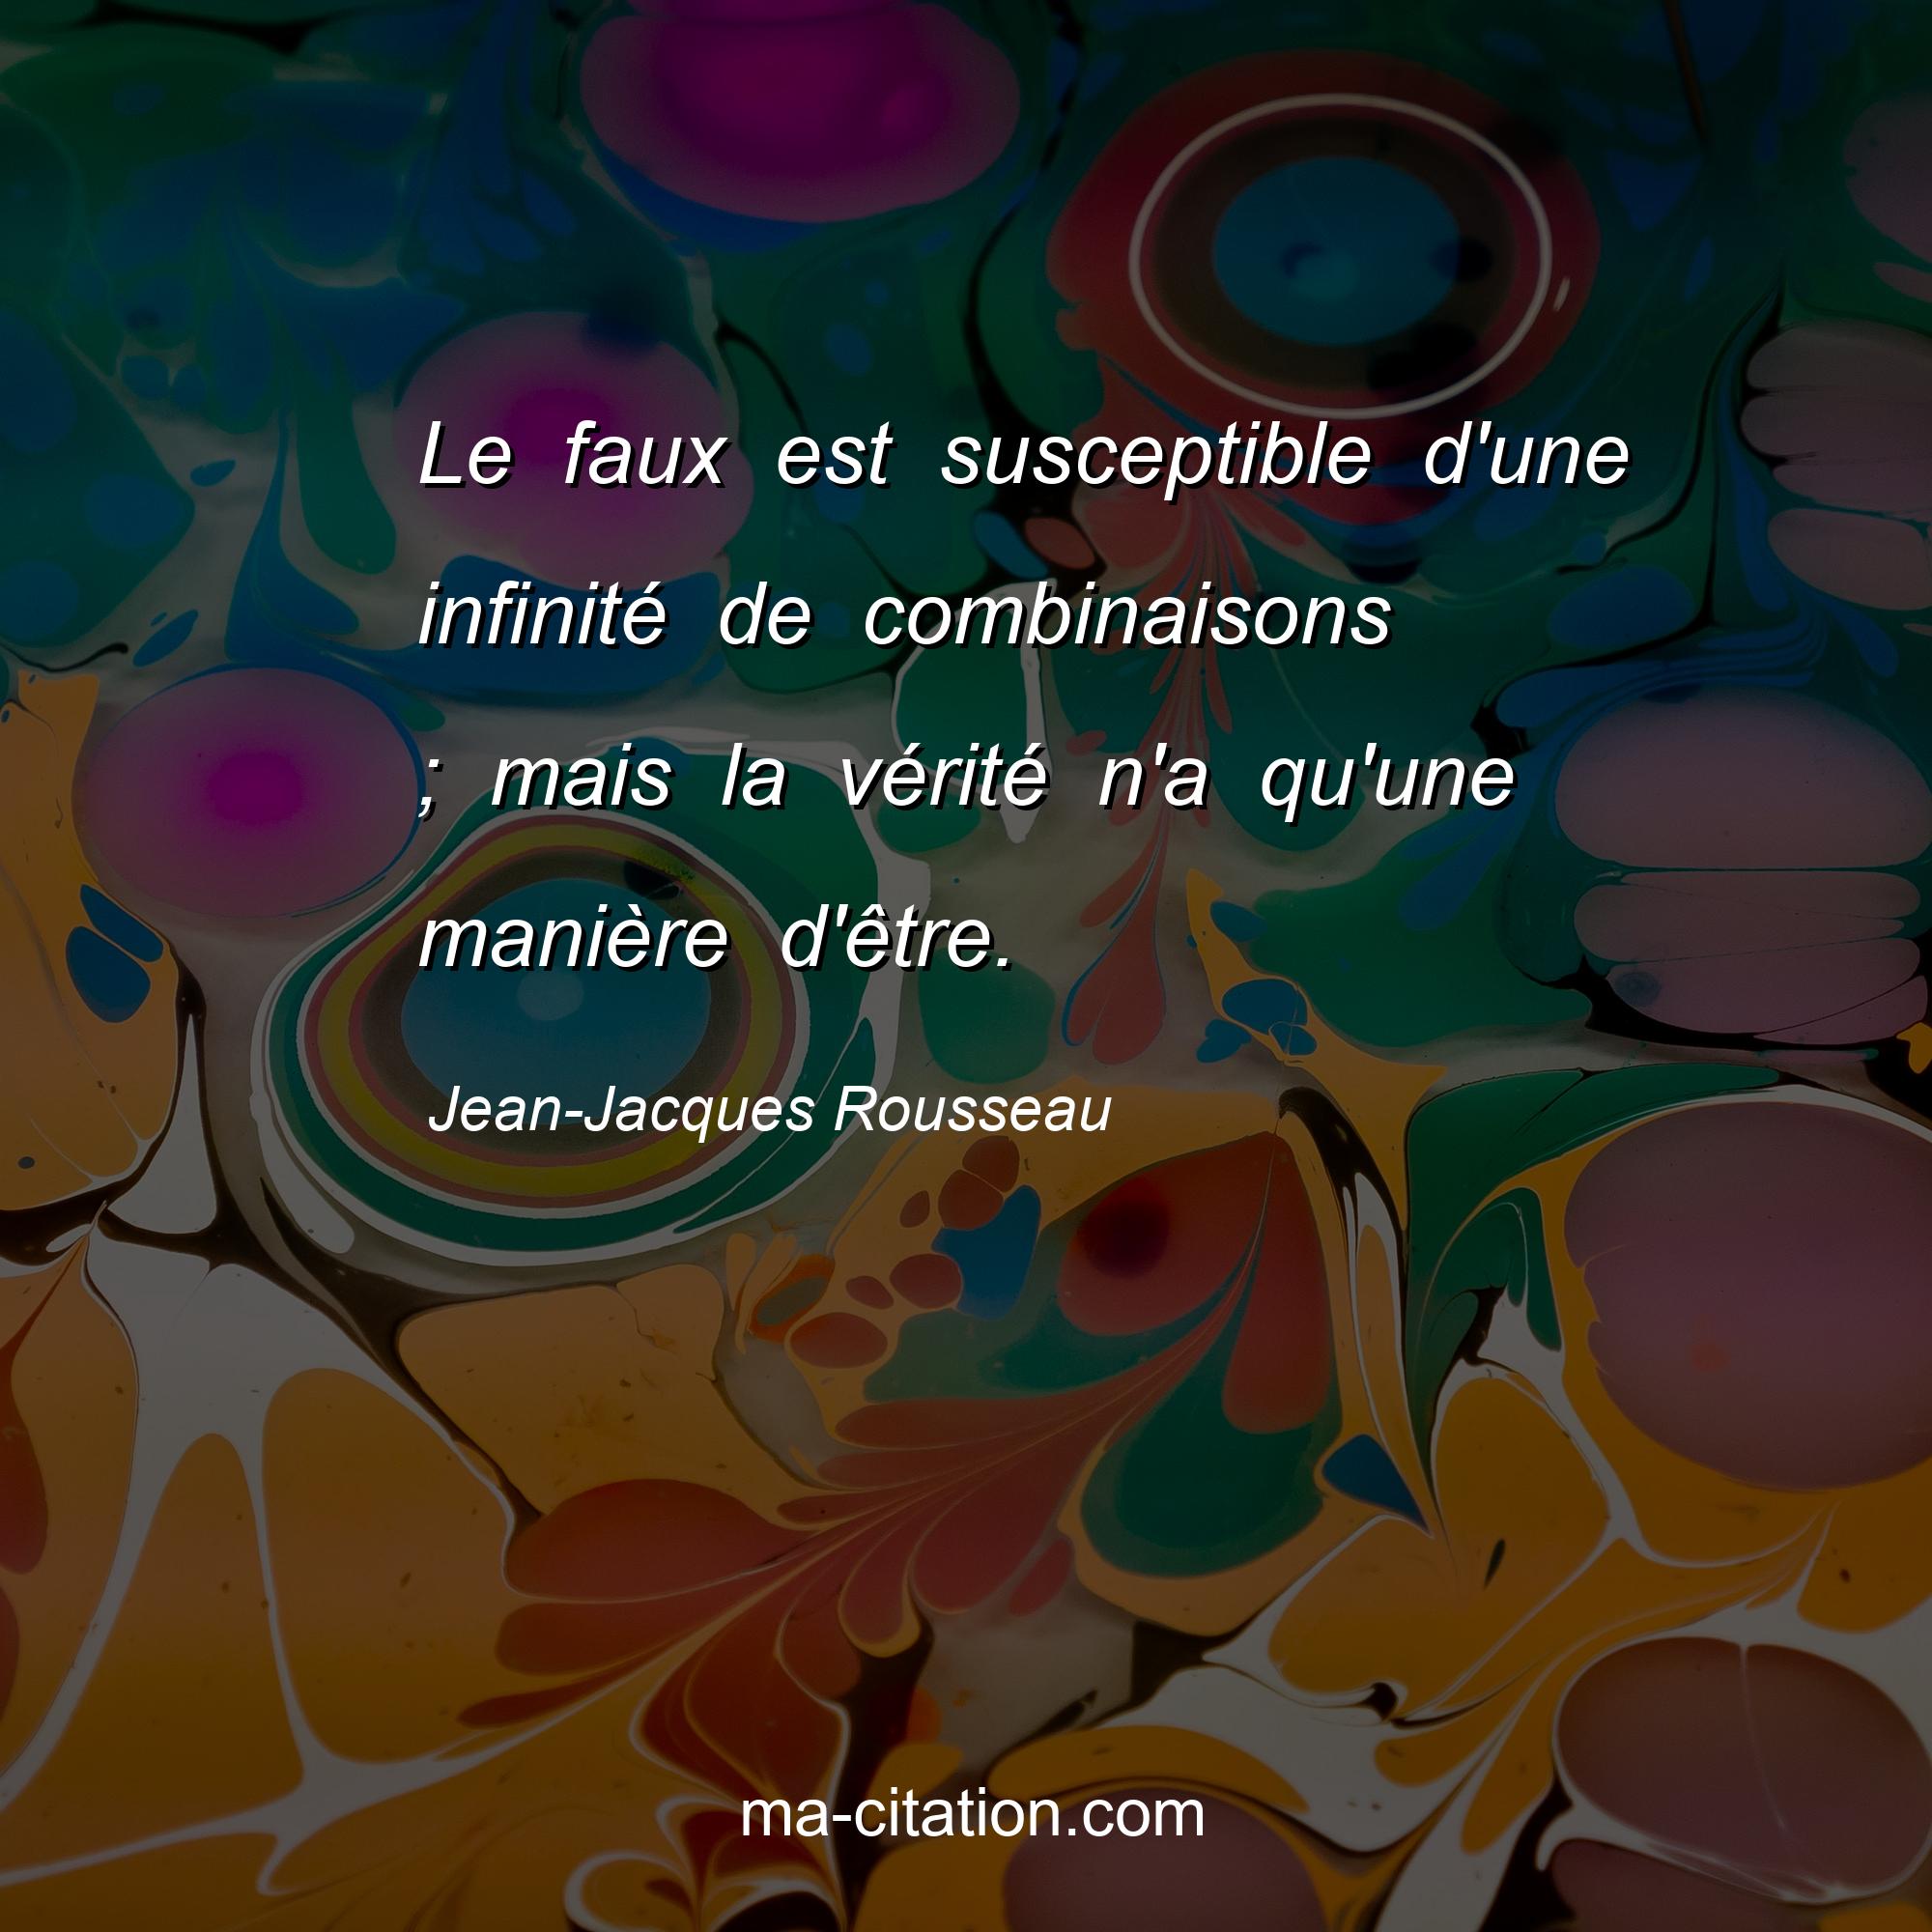 Jean-Jacques Rousseau : Le faux est susceptible d'une infinité de combinaisons ; mais la vérité n'a qu'une manière d'être.